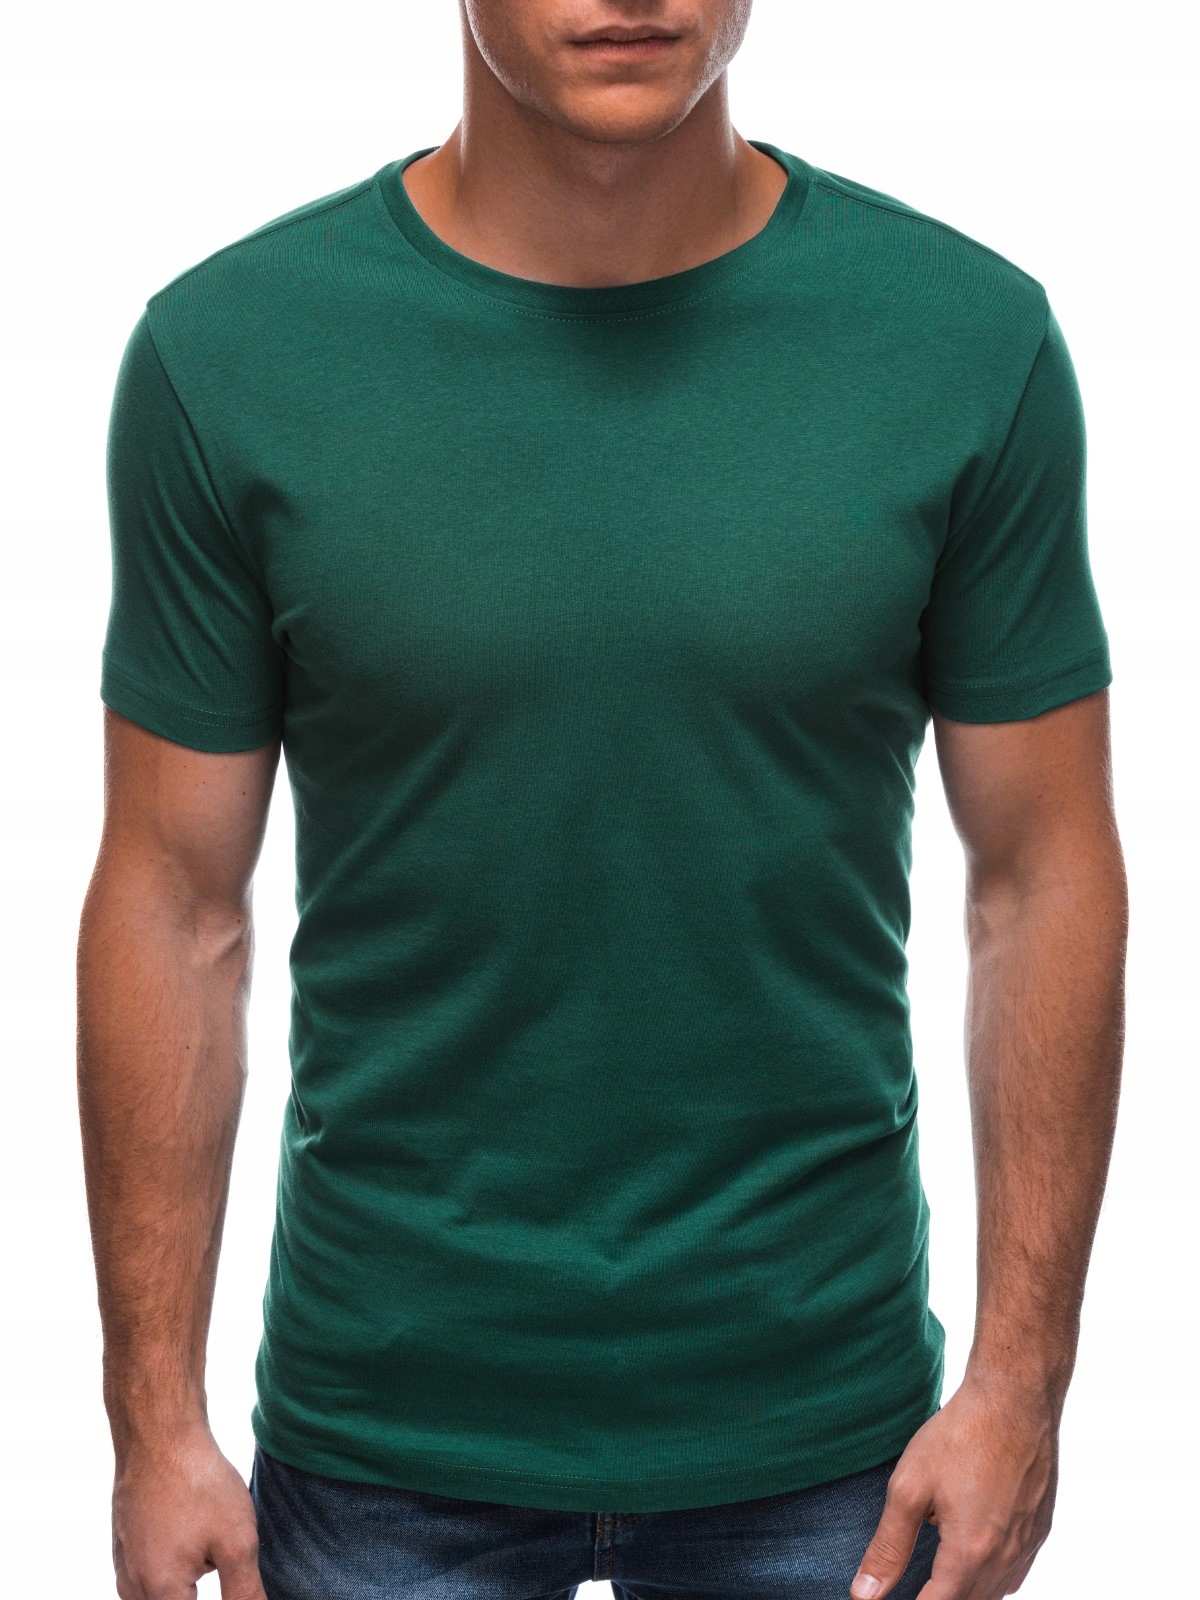 T-shirt męski basic EM-TSBS-0100 zielony L